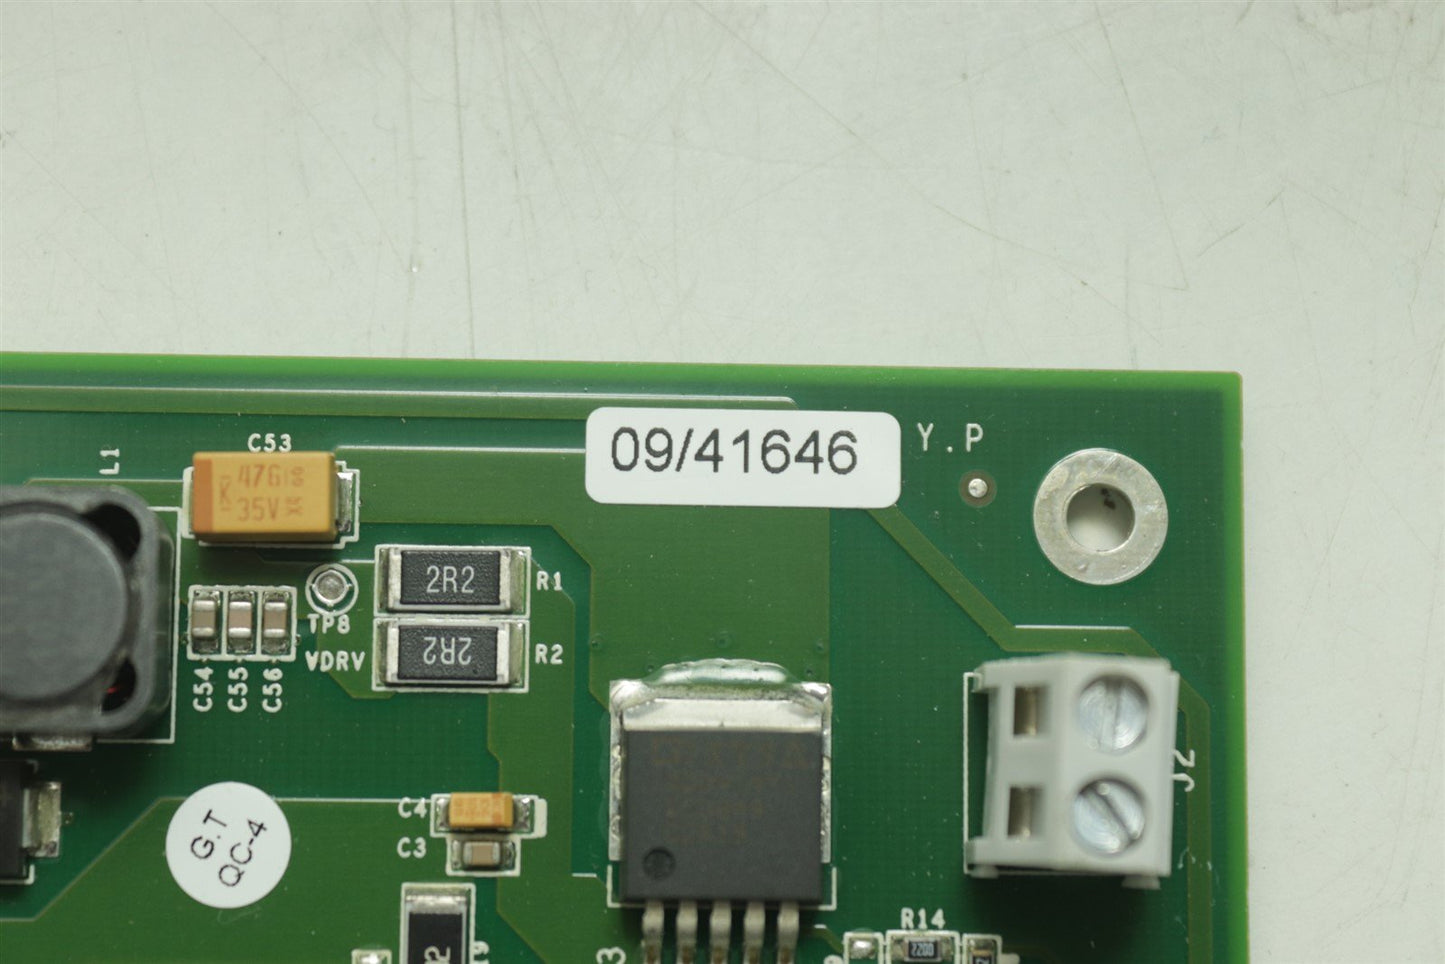 Alma Lasers US Driver and Oscillator PCB Board Card 09/41646